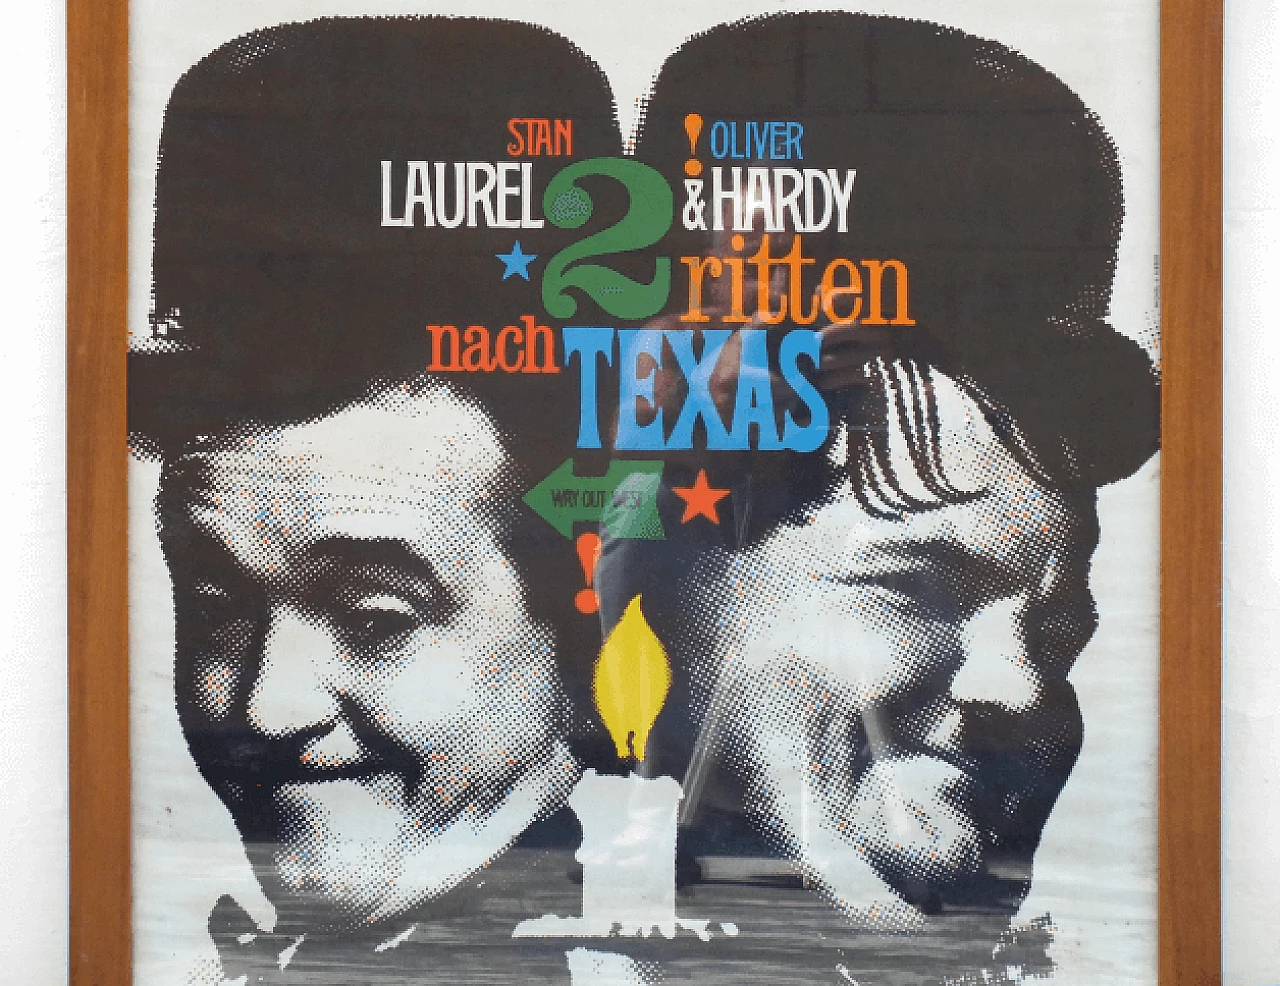 Laurel & Hardy - Zwei ritten nach Texas movie poster, 1960s 2